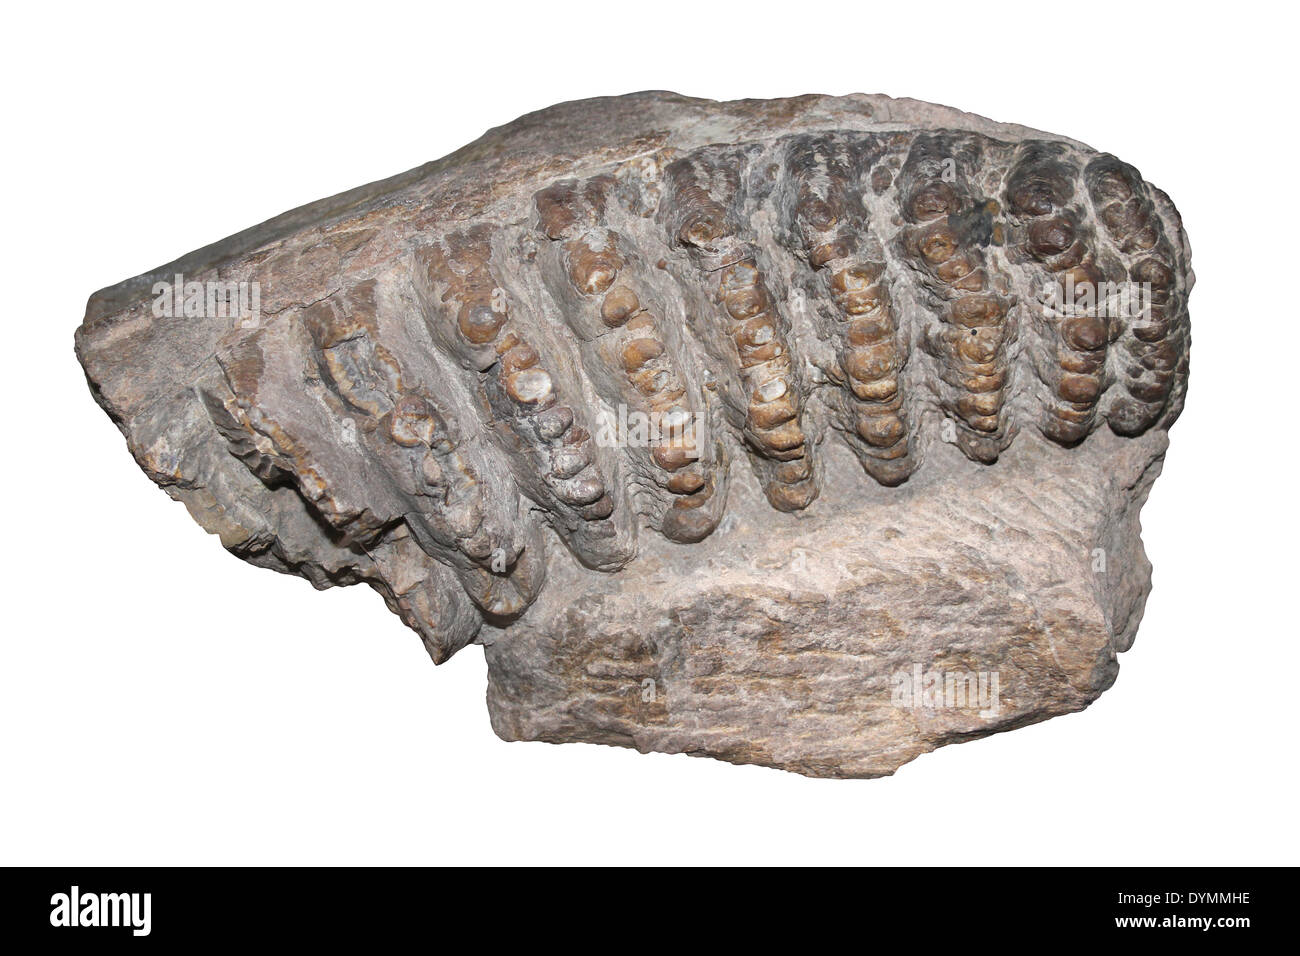 Zahn des Stegodont Stegolophodon SP. Pliozän, Siwalik Hills, Indien Stockfoto